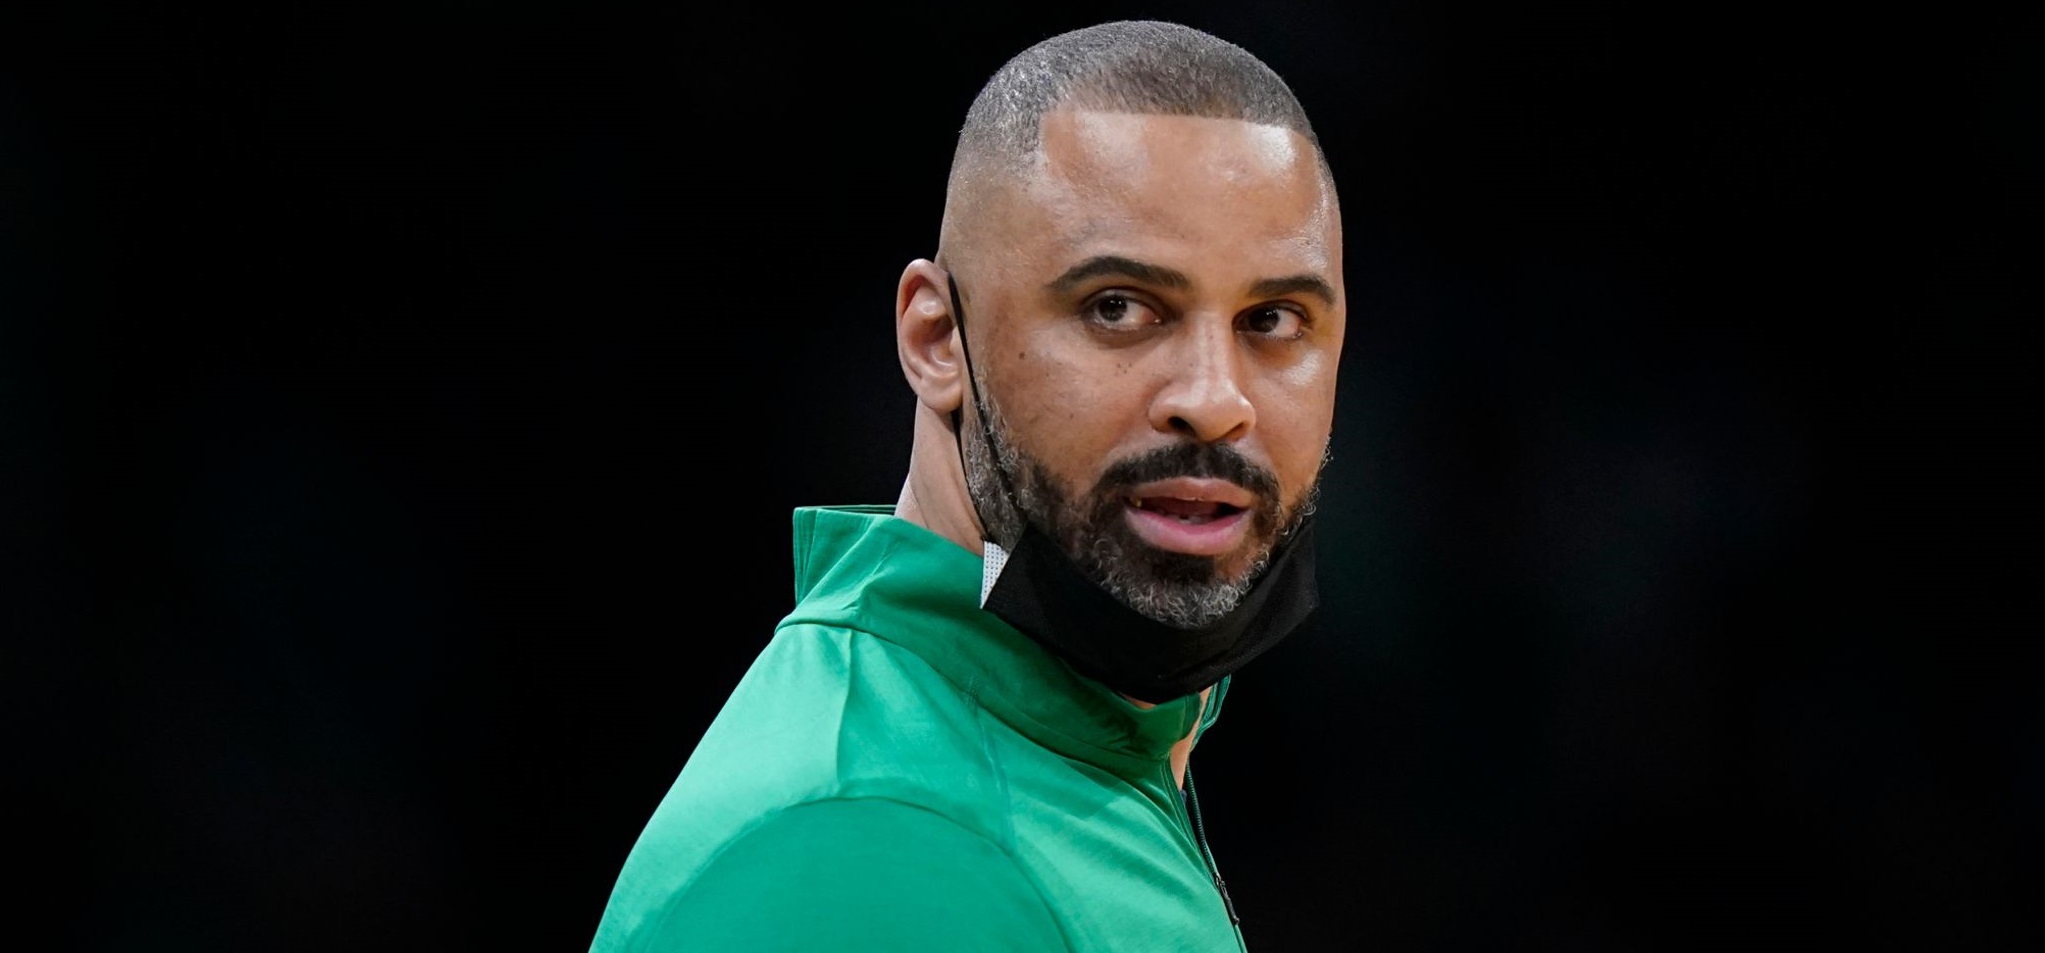 Ime Udoka Diberhentikan Sebagai Pelatih Boston Celtics Karena Jalin Hubungan Dengan Pekerja Internal